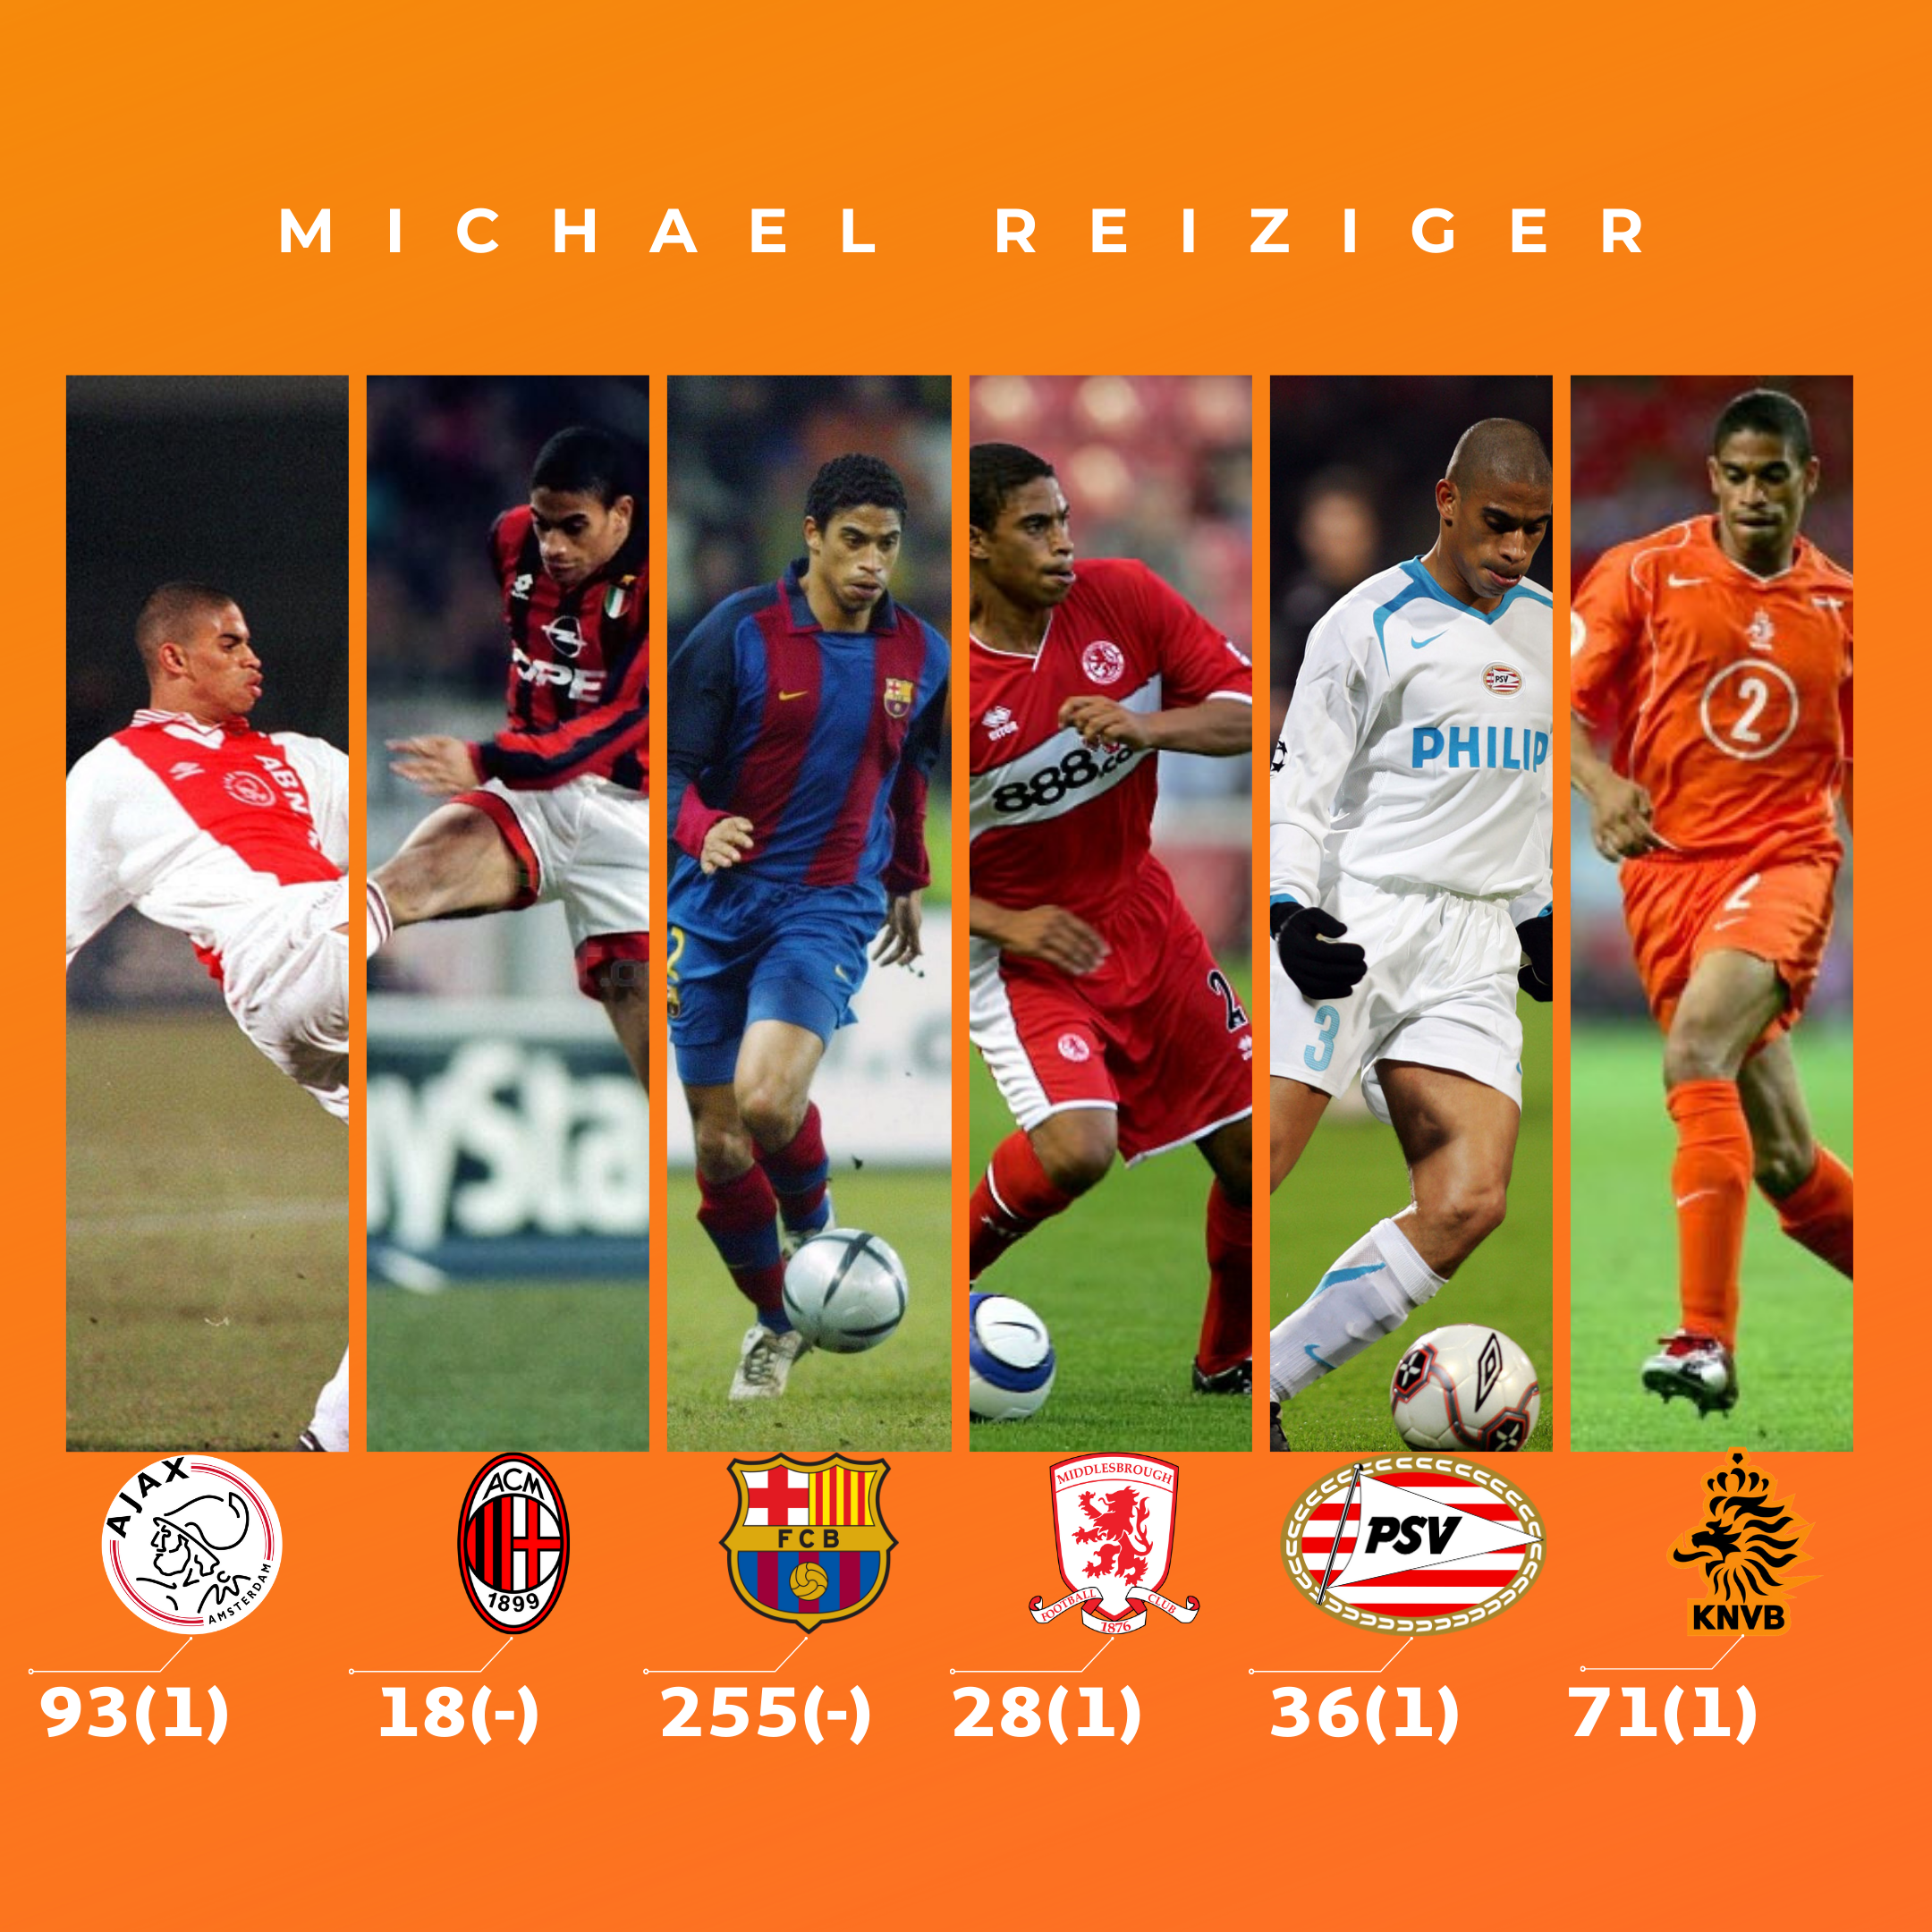 Лучшие игроки в истории голландского футбола, 1 часть (по мнению авторов  блога) - Классика FIFA - Блоги - Sports.ru